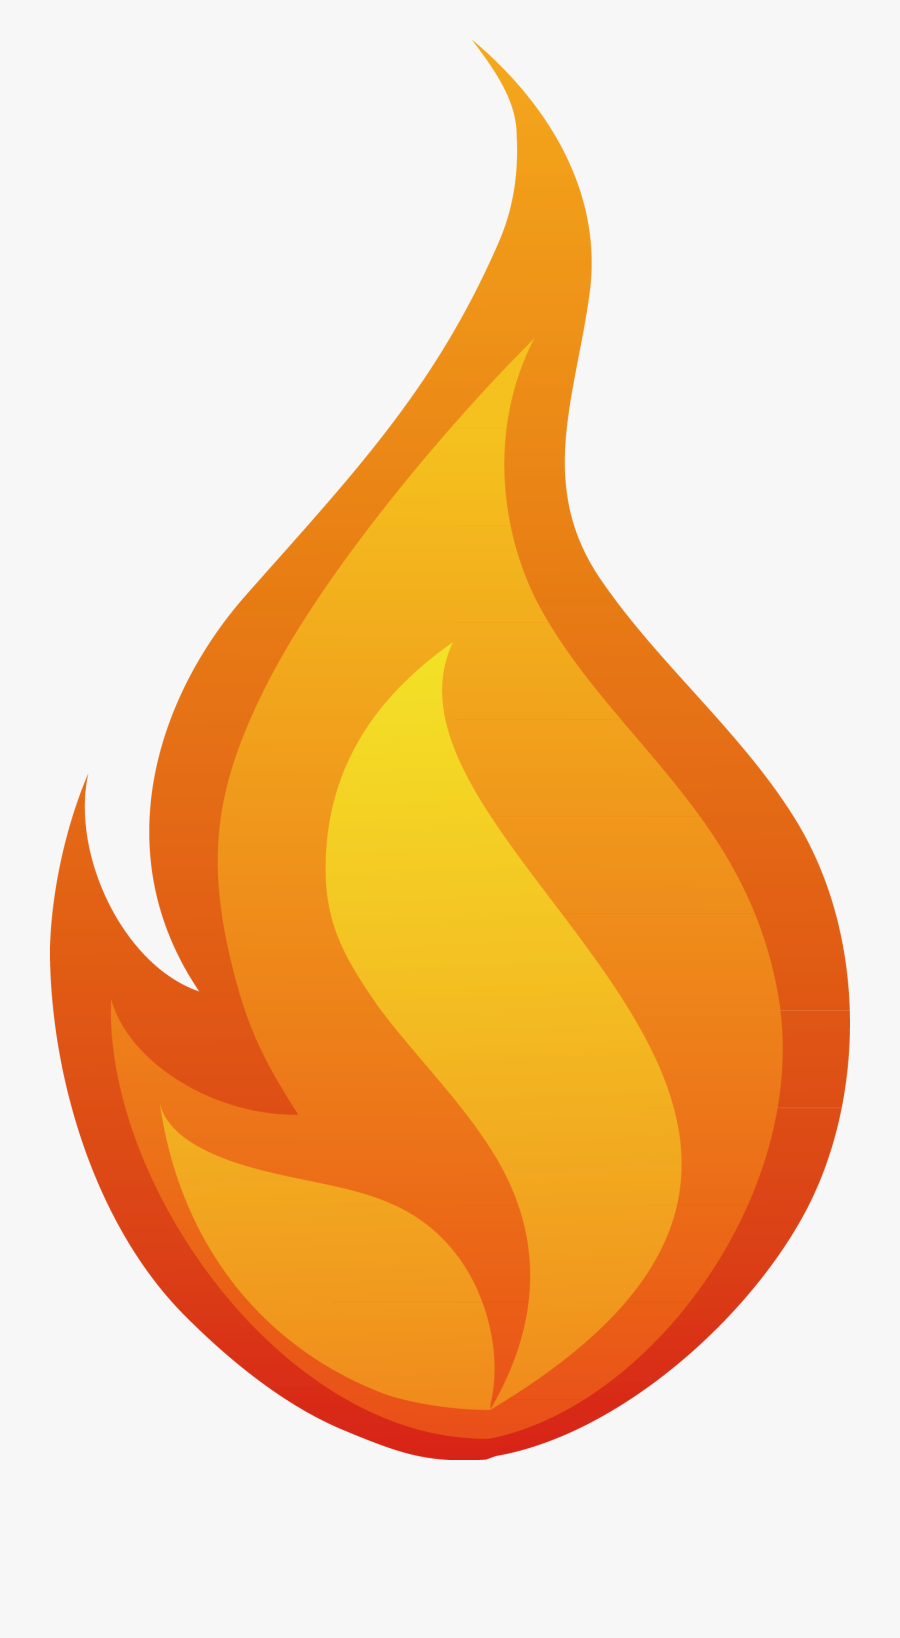 Flame Fire Clip Art - Vector Llama De Fuego, Transparent Clipart